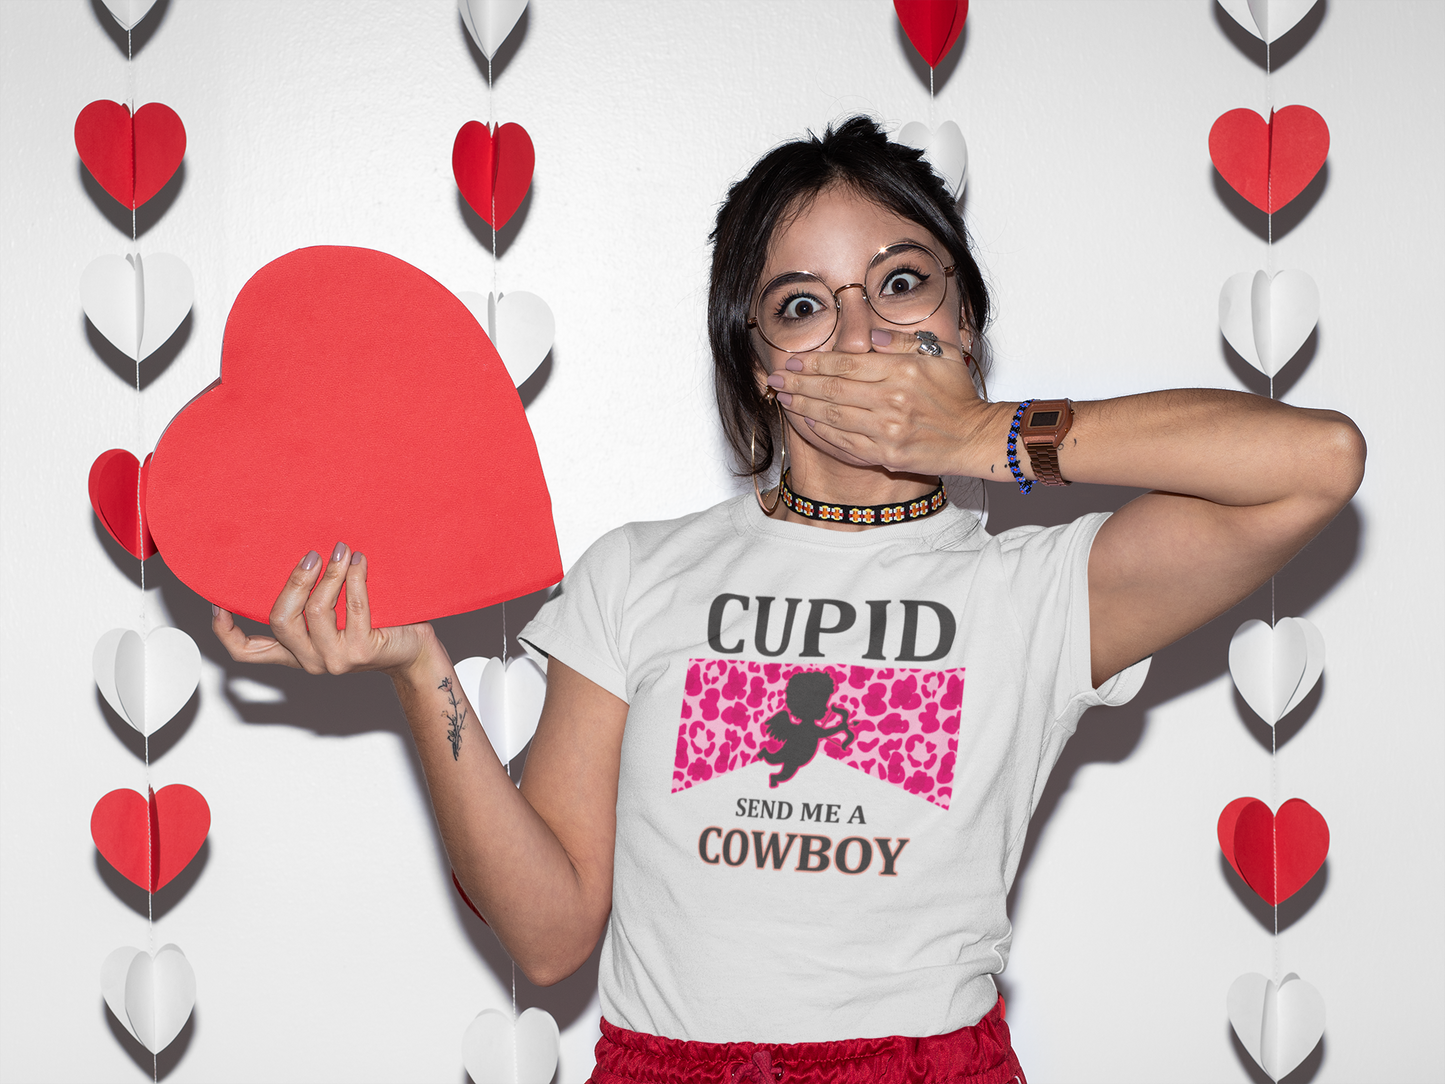 Cupid Send Me a Cowboy - Full Color Heat Transfer